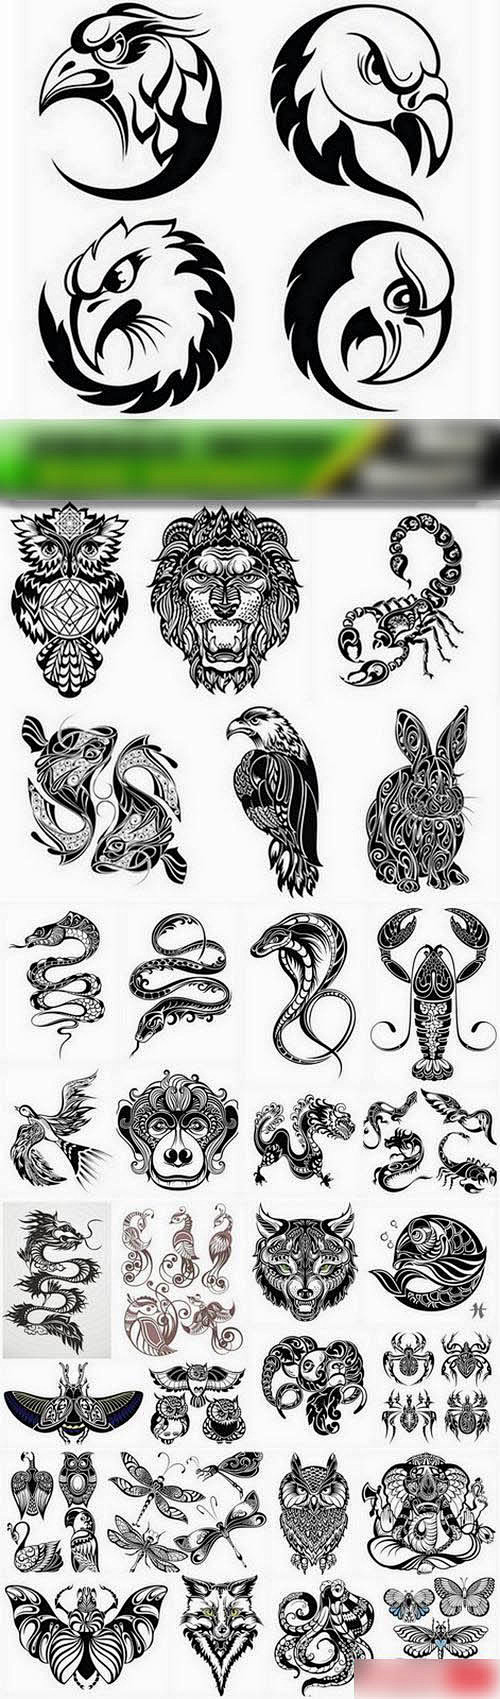 抽象的动物纹身图腾图案 EPS矢量图设计...